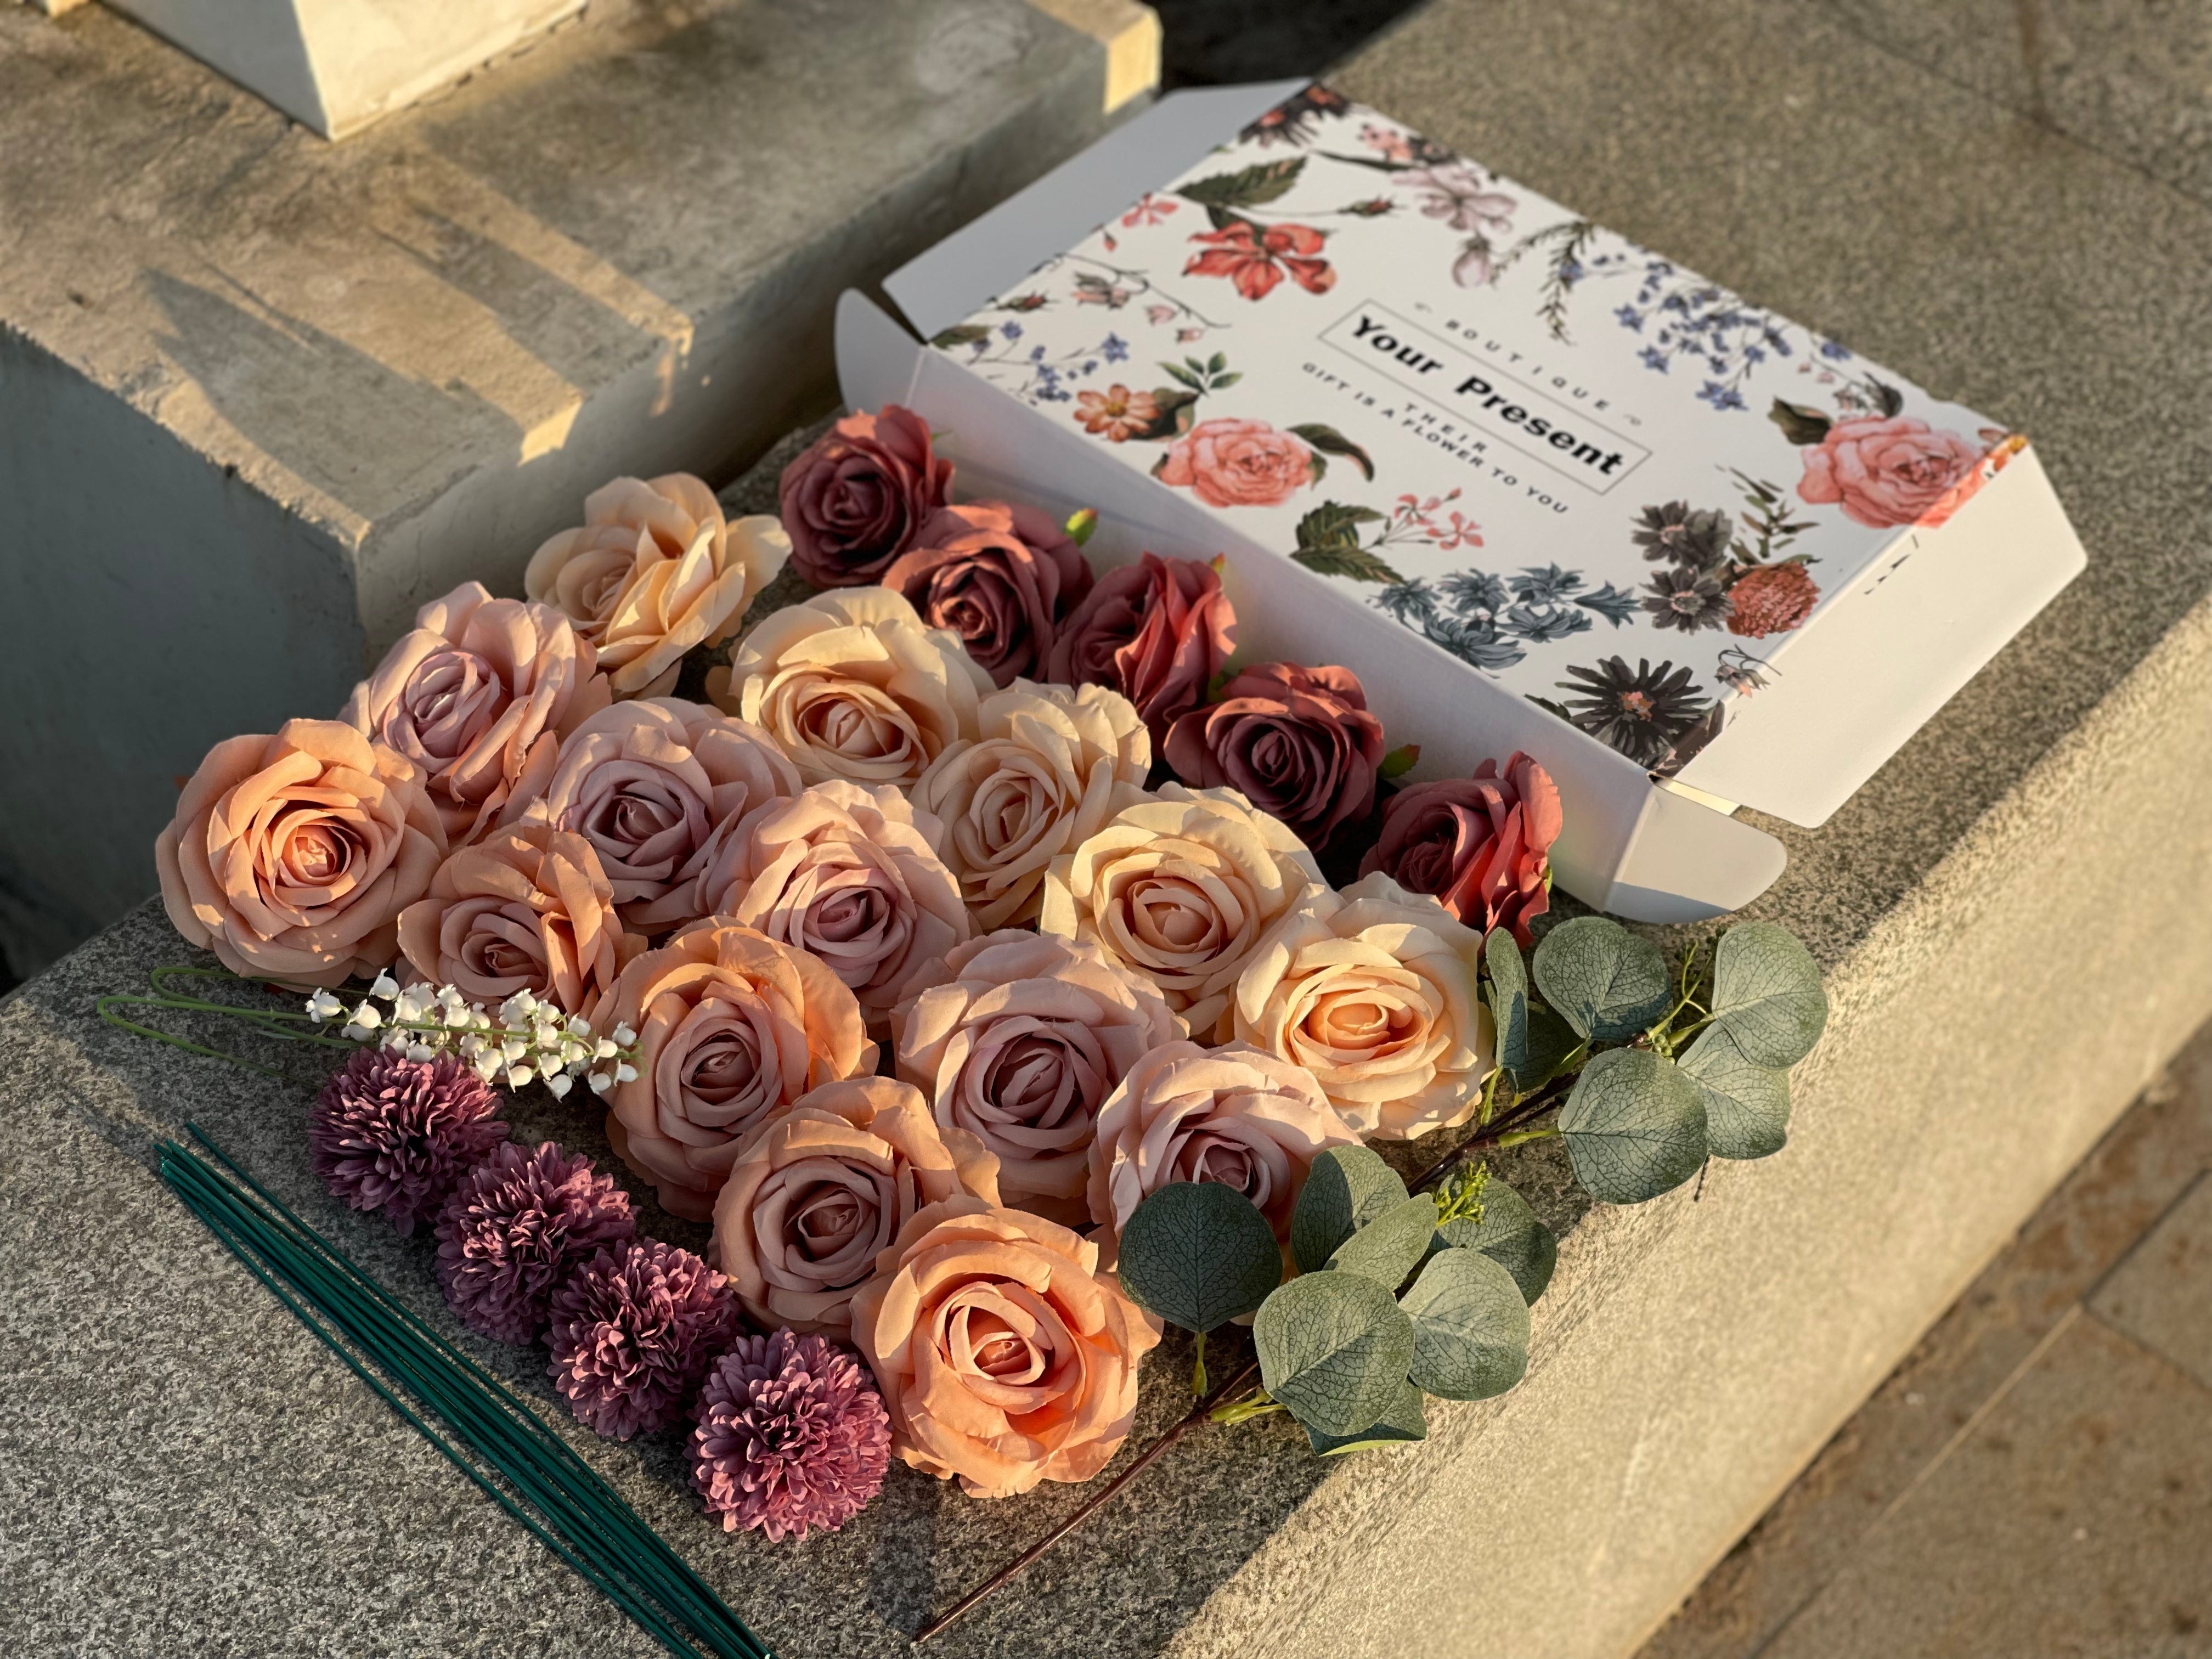 Bulk 28 Pcs Dusty Rose Ombre Artificial Flower Box Set for Crafts Wholesale